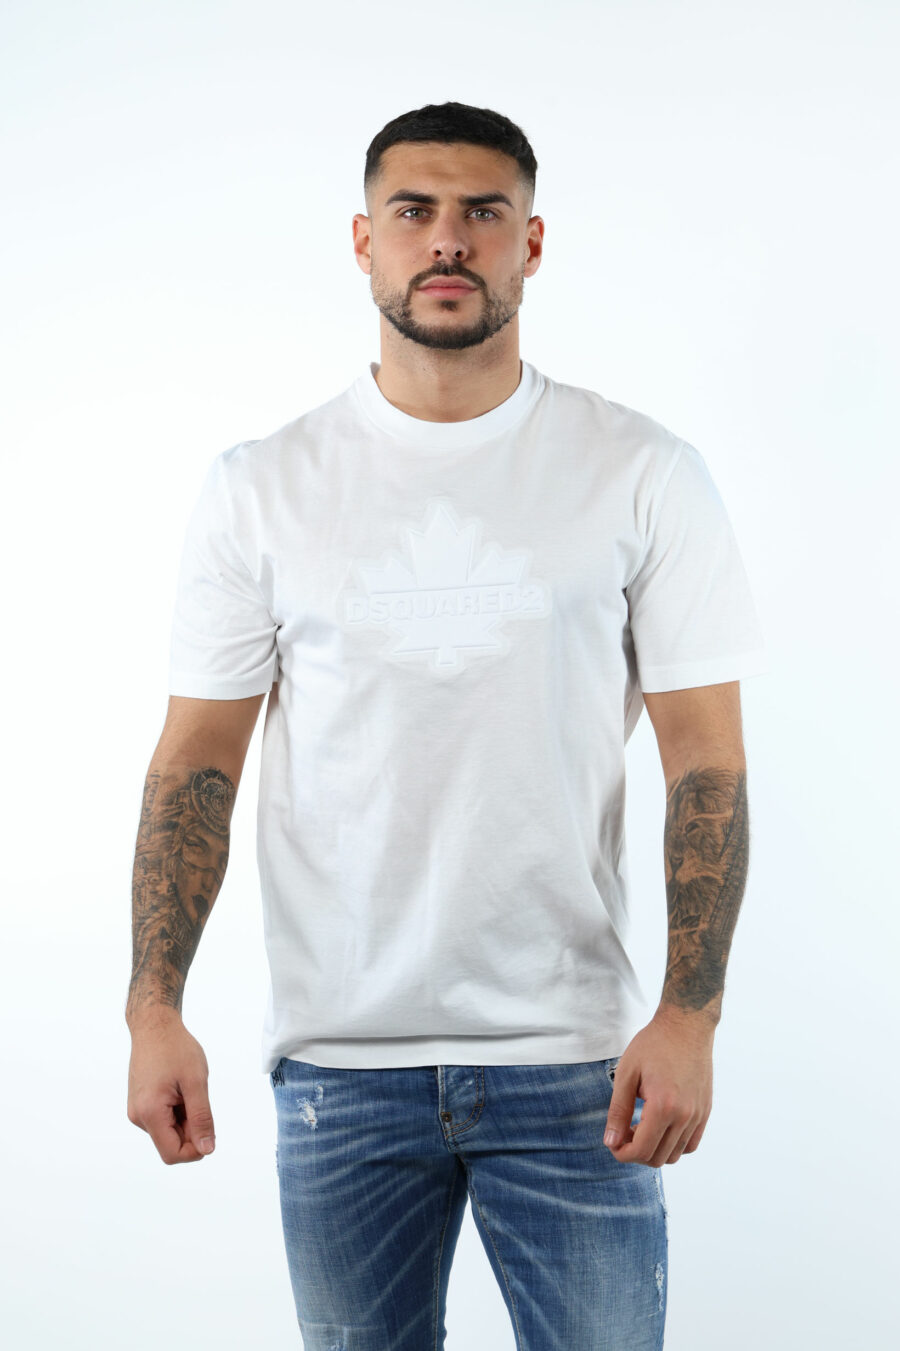 T-shirt blanc avec feuille monochrome en relief maxilogo - 106619